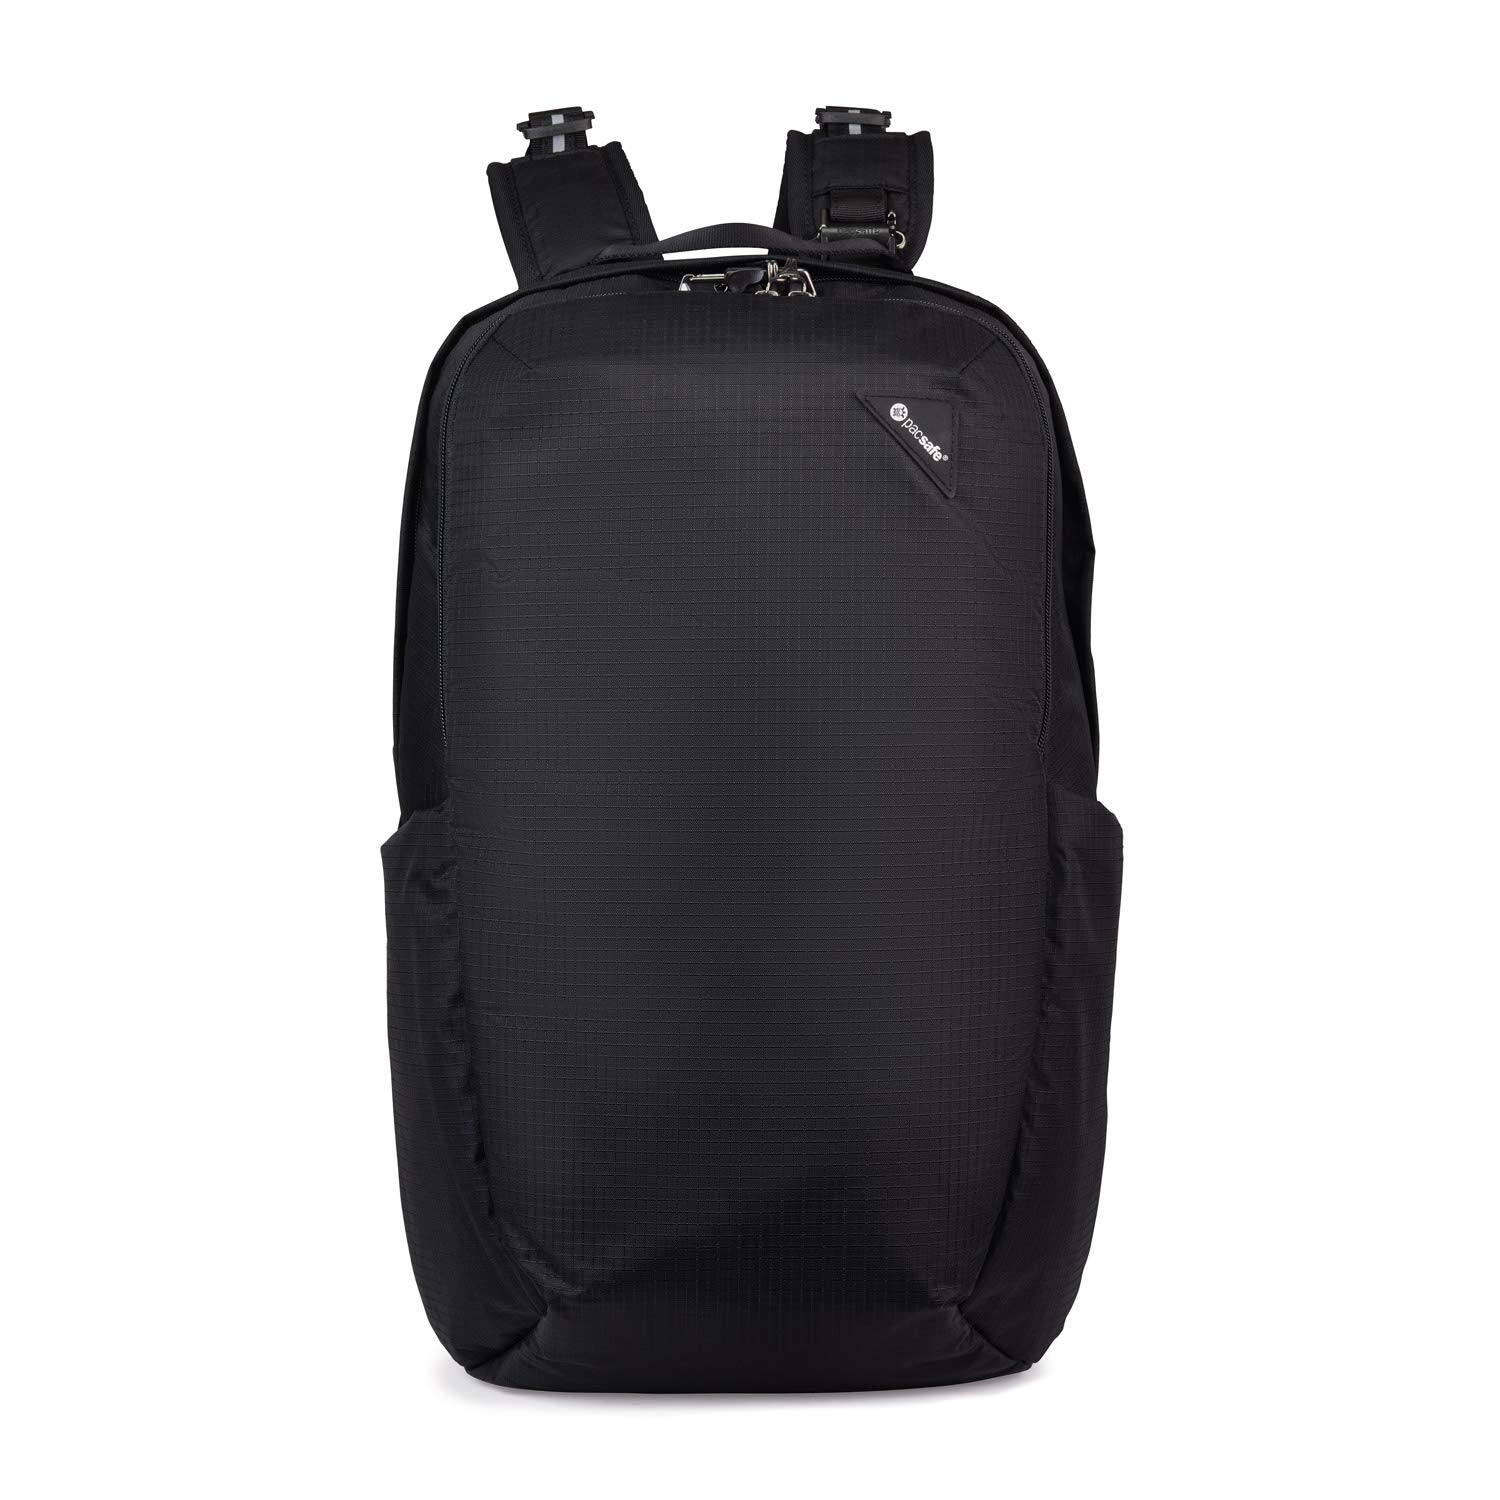 Pacsafe Unisex-Erwachsene Vibe 25 Anti-Theft Backpack Rucksack mit Sicherheitstechnologie 25 Liter, Schwarz/Jet Black